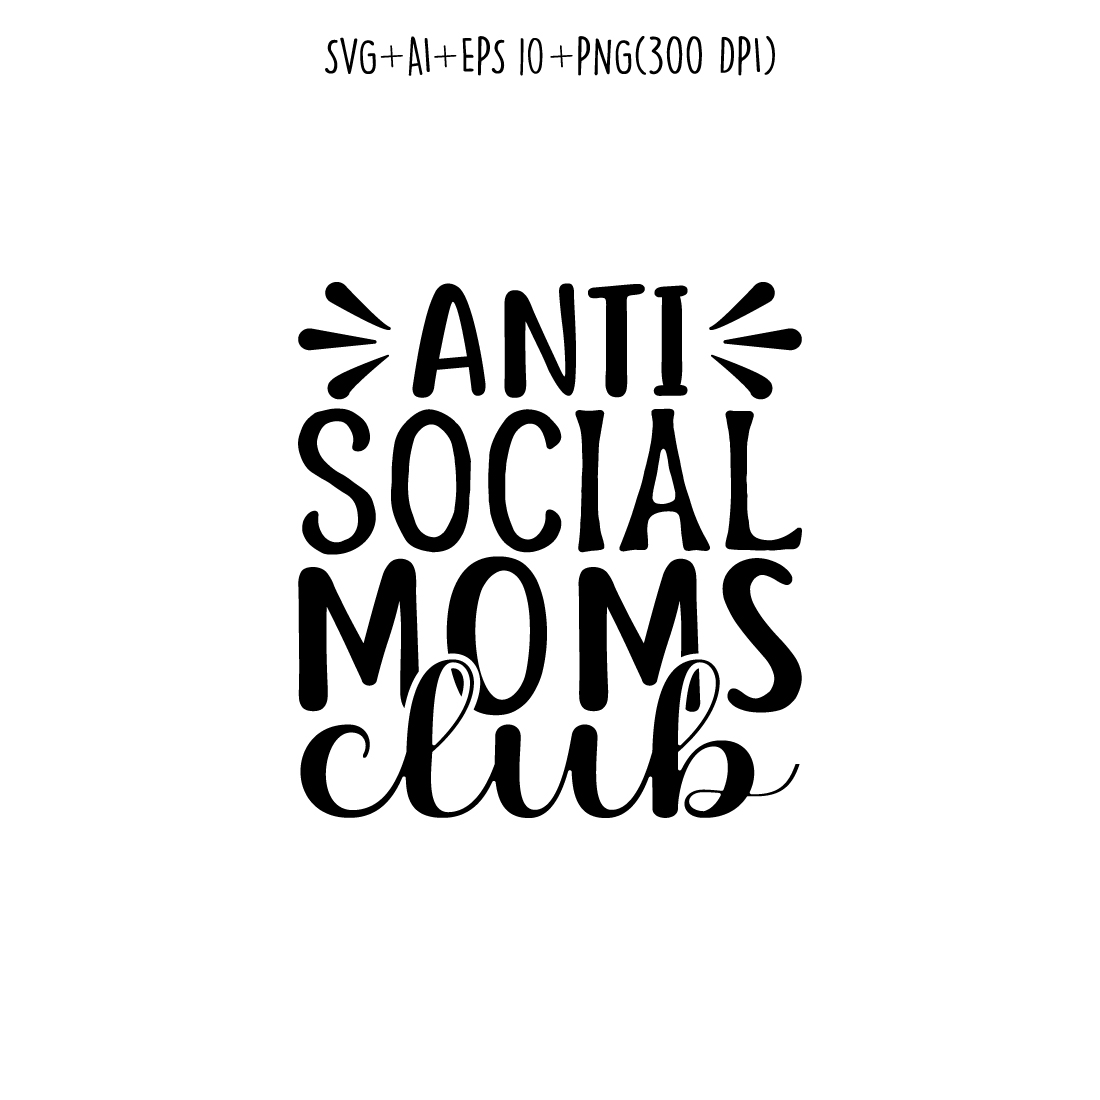 Antisocial moms club shirt designs